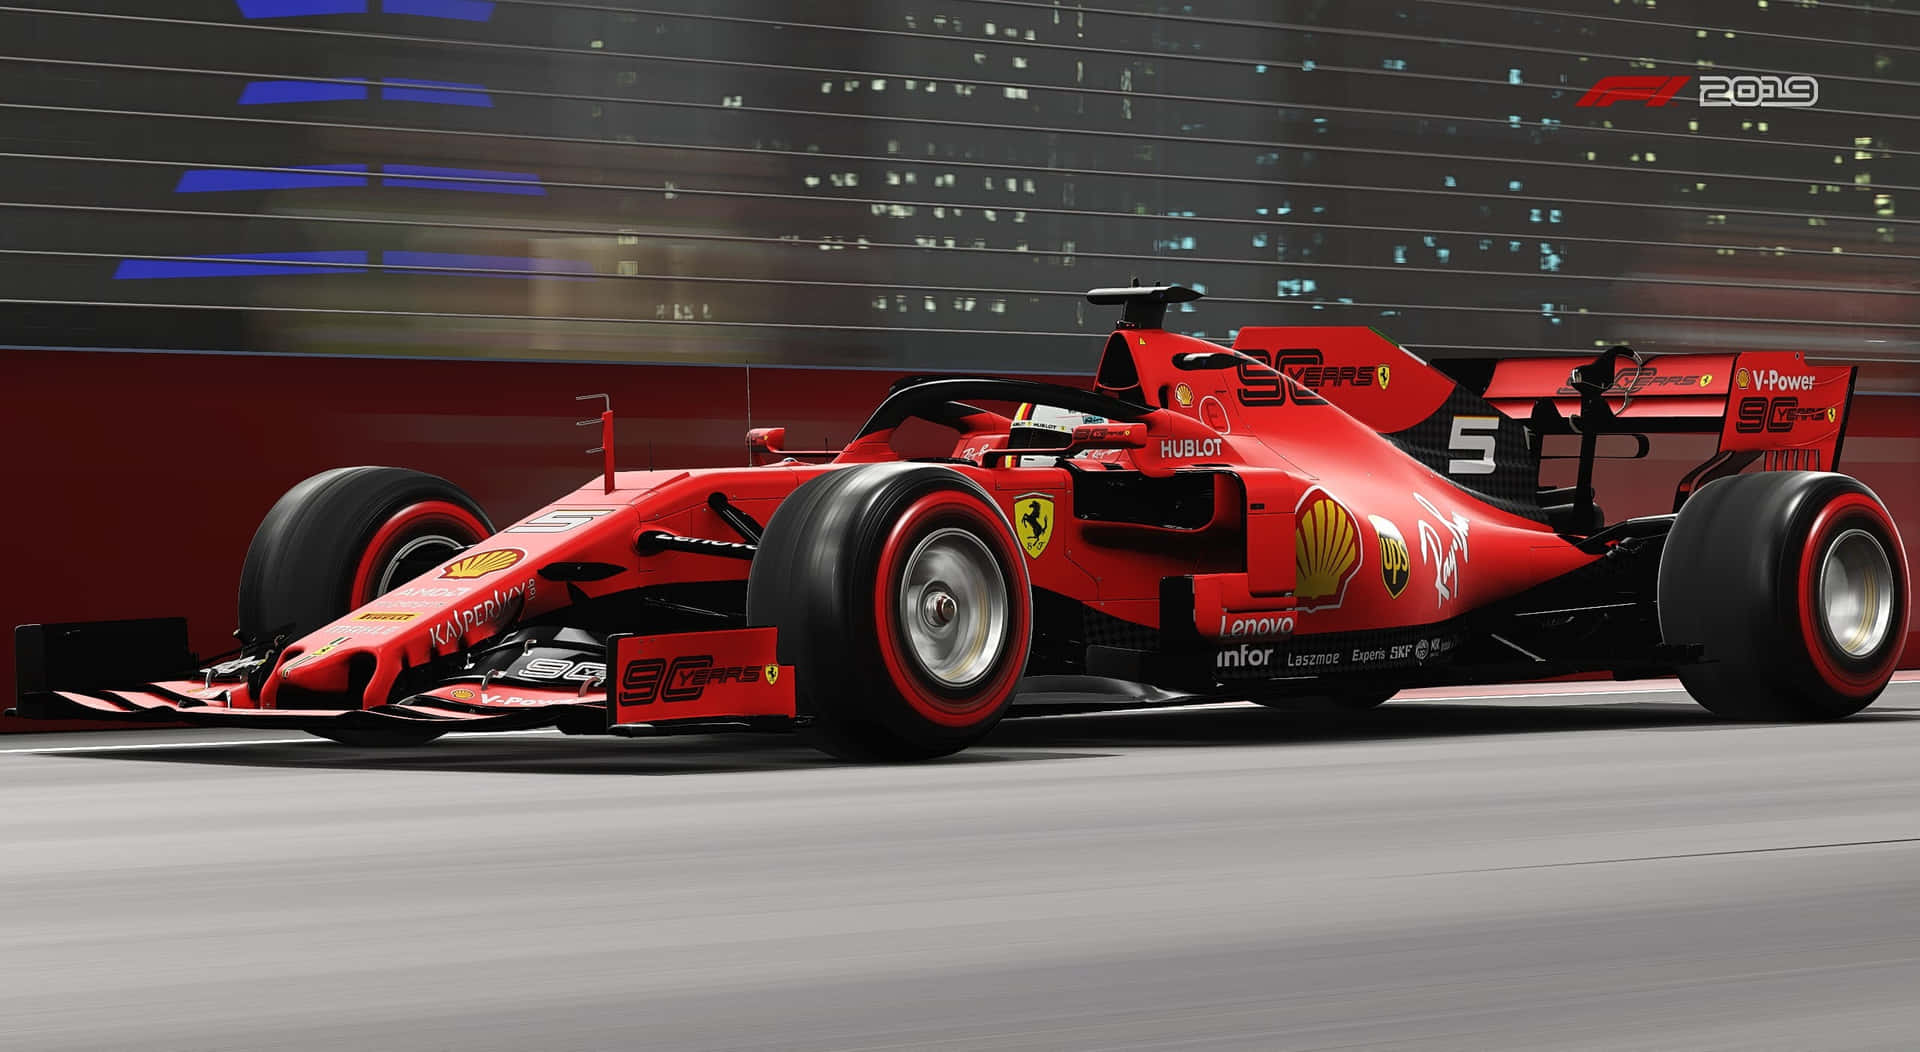 Ferrarif1 2019 Fahrer Präsentieren Ihre Geschwindigkeit. Wallpaper